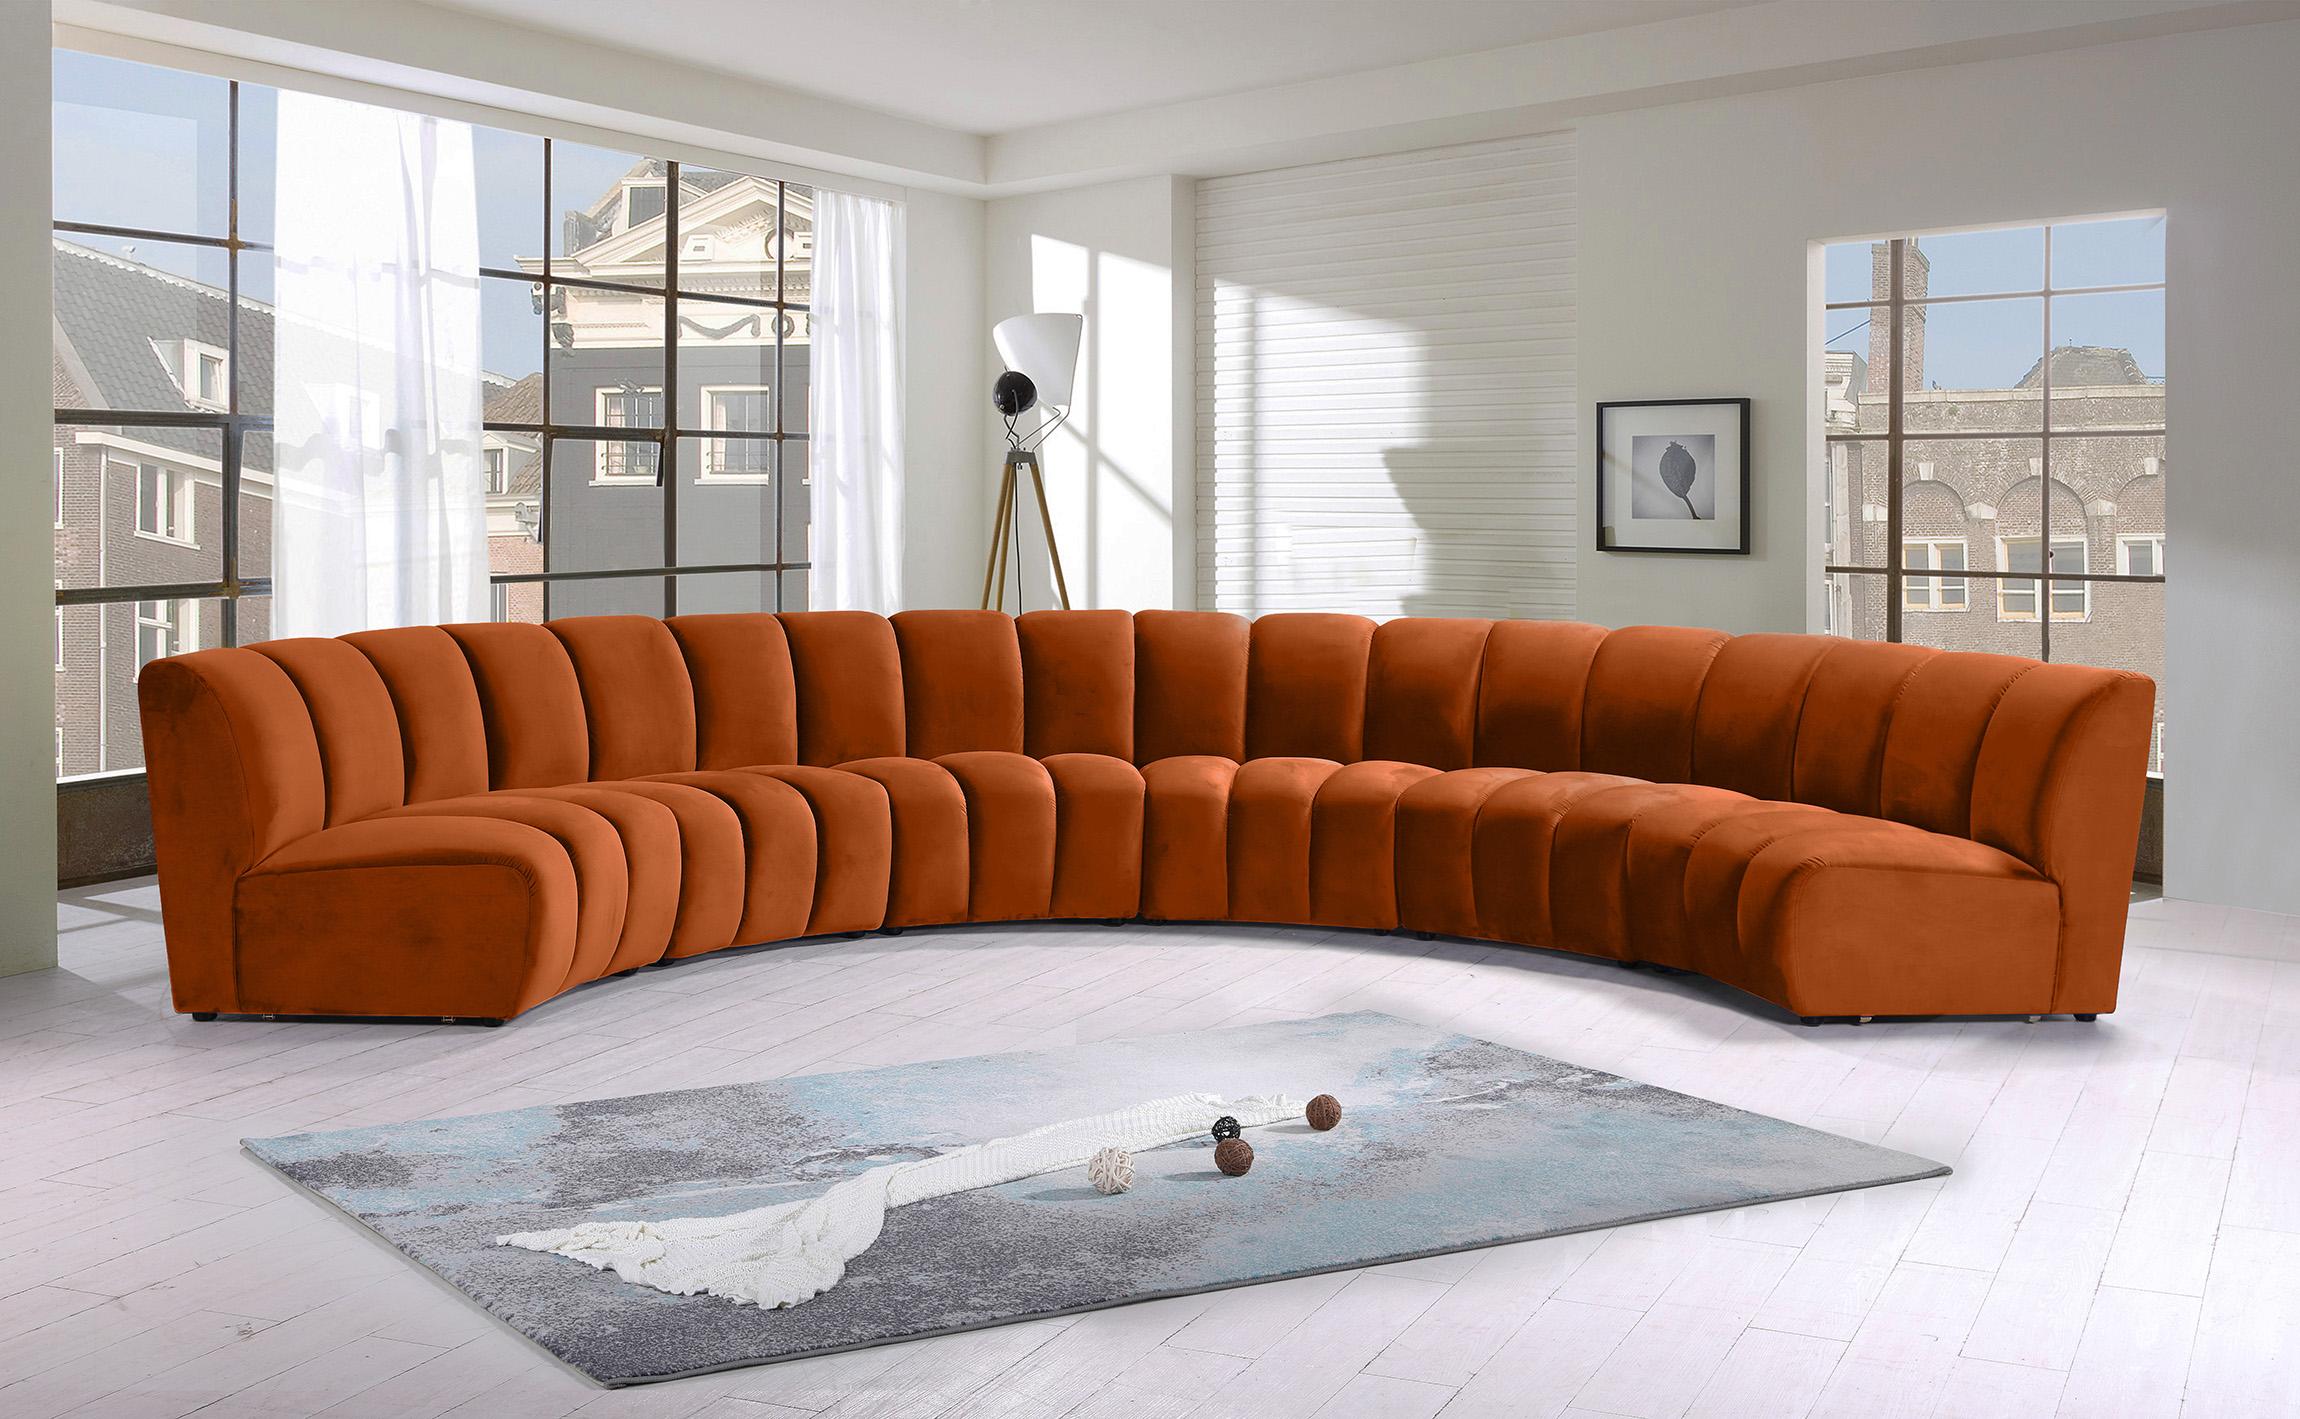 

    
Meridian Furniture INFINITY 638Cognac-6PC Modular Sectional Sofa Cognac 638Cognac-6PC
